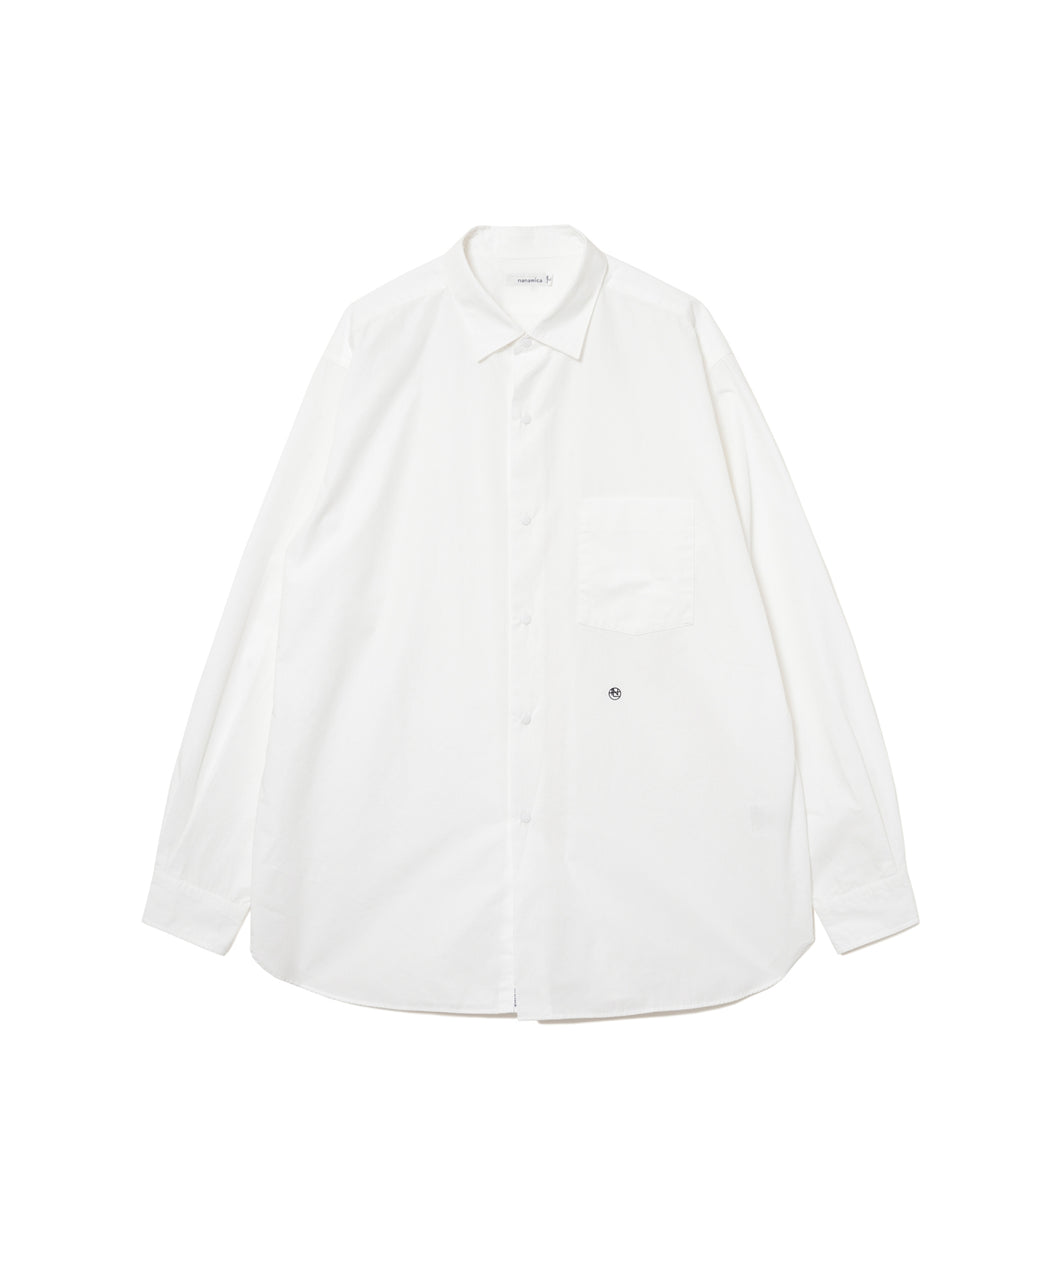 【MEN】nanamica Regular Collar Wind Shirt SUGS400